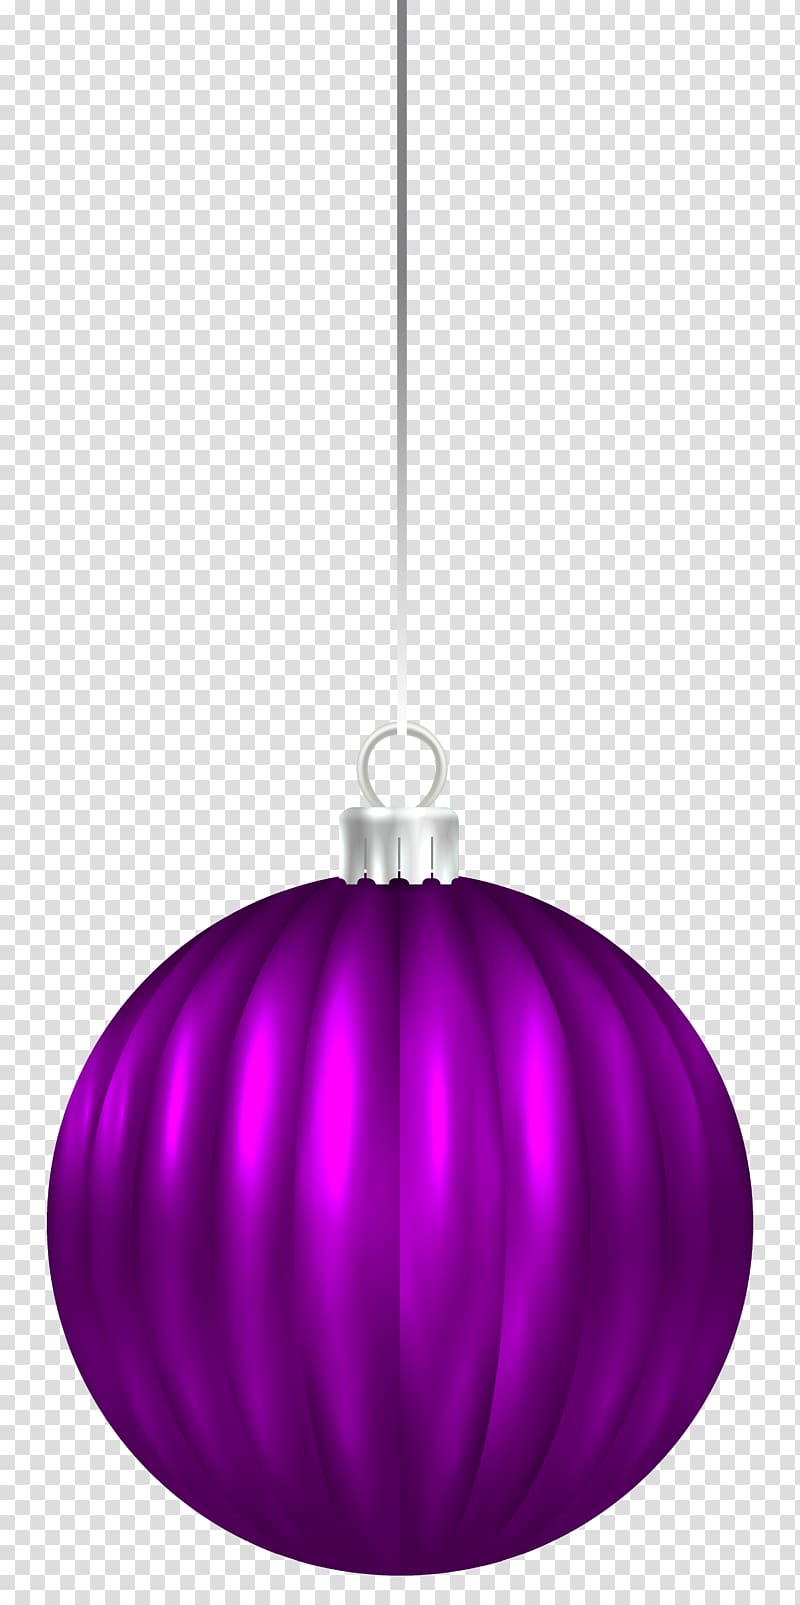 purple bauble , Purple Sphere Ceiling Light fixture Pattern, Purple Christmas Ball Ornament transparent background PNG clipart